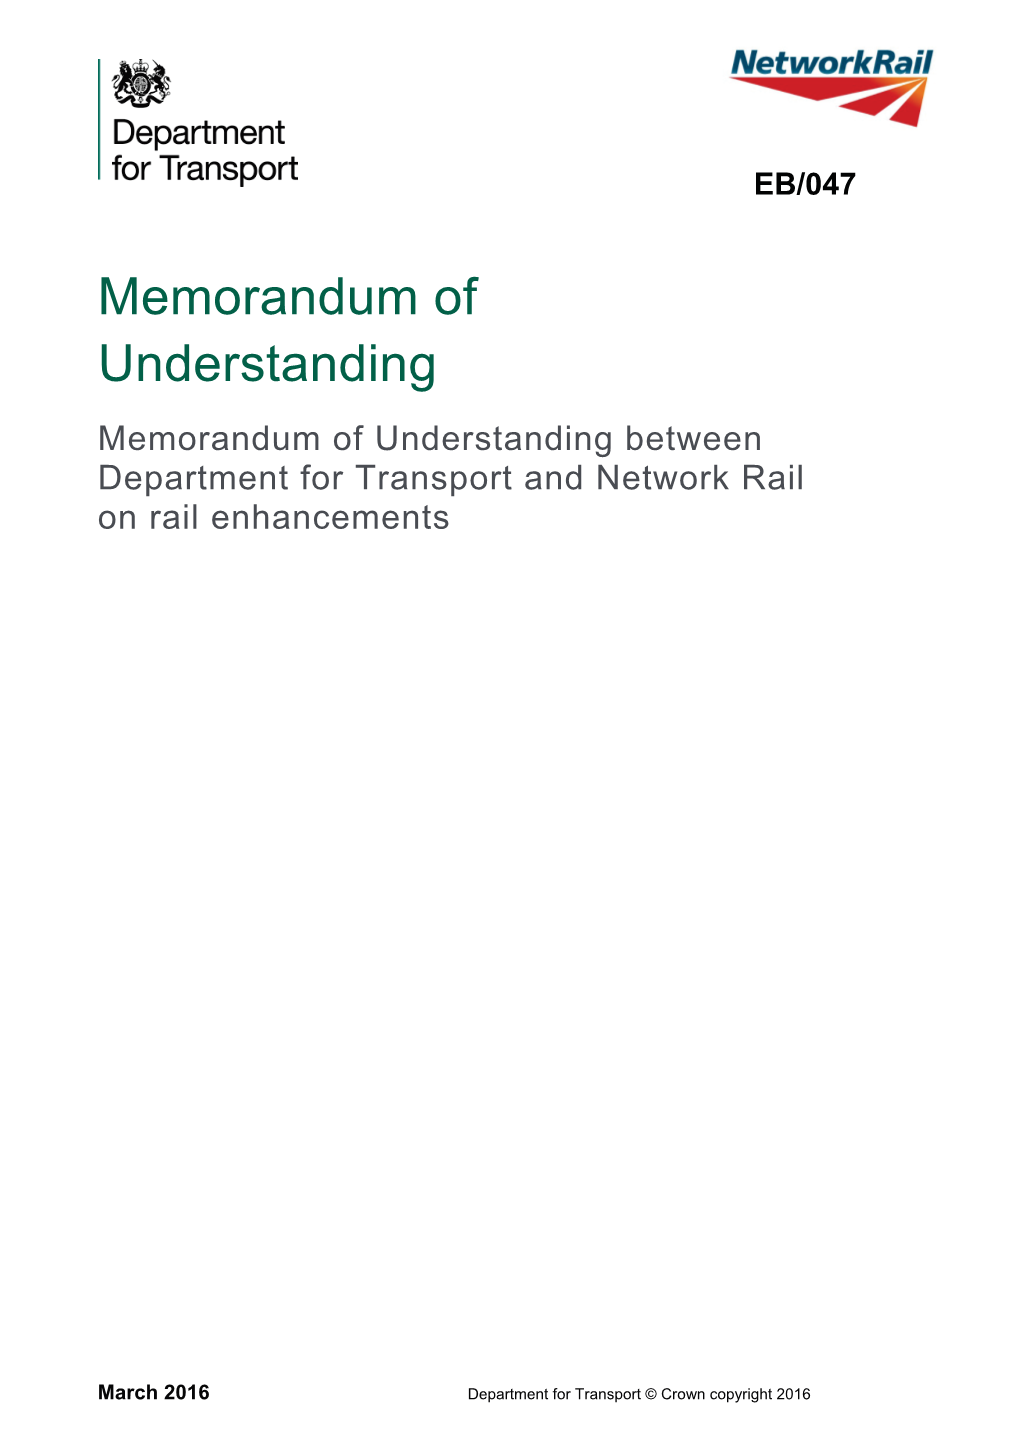 Memorandum of Understanding Between Department for Transport